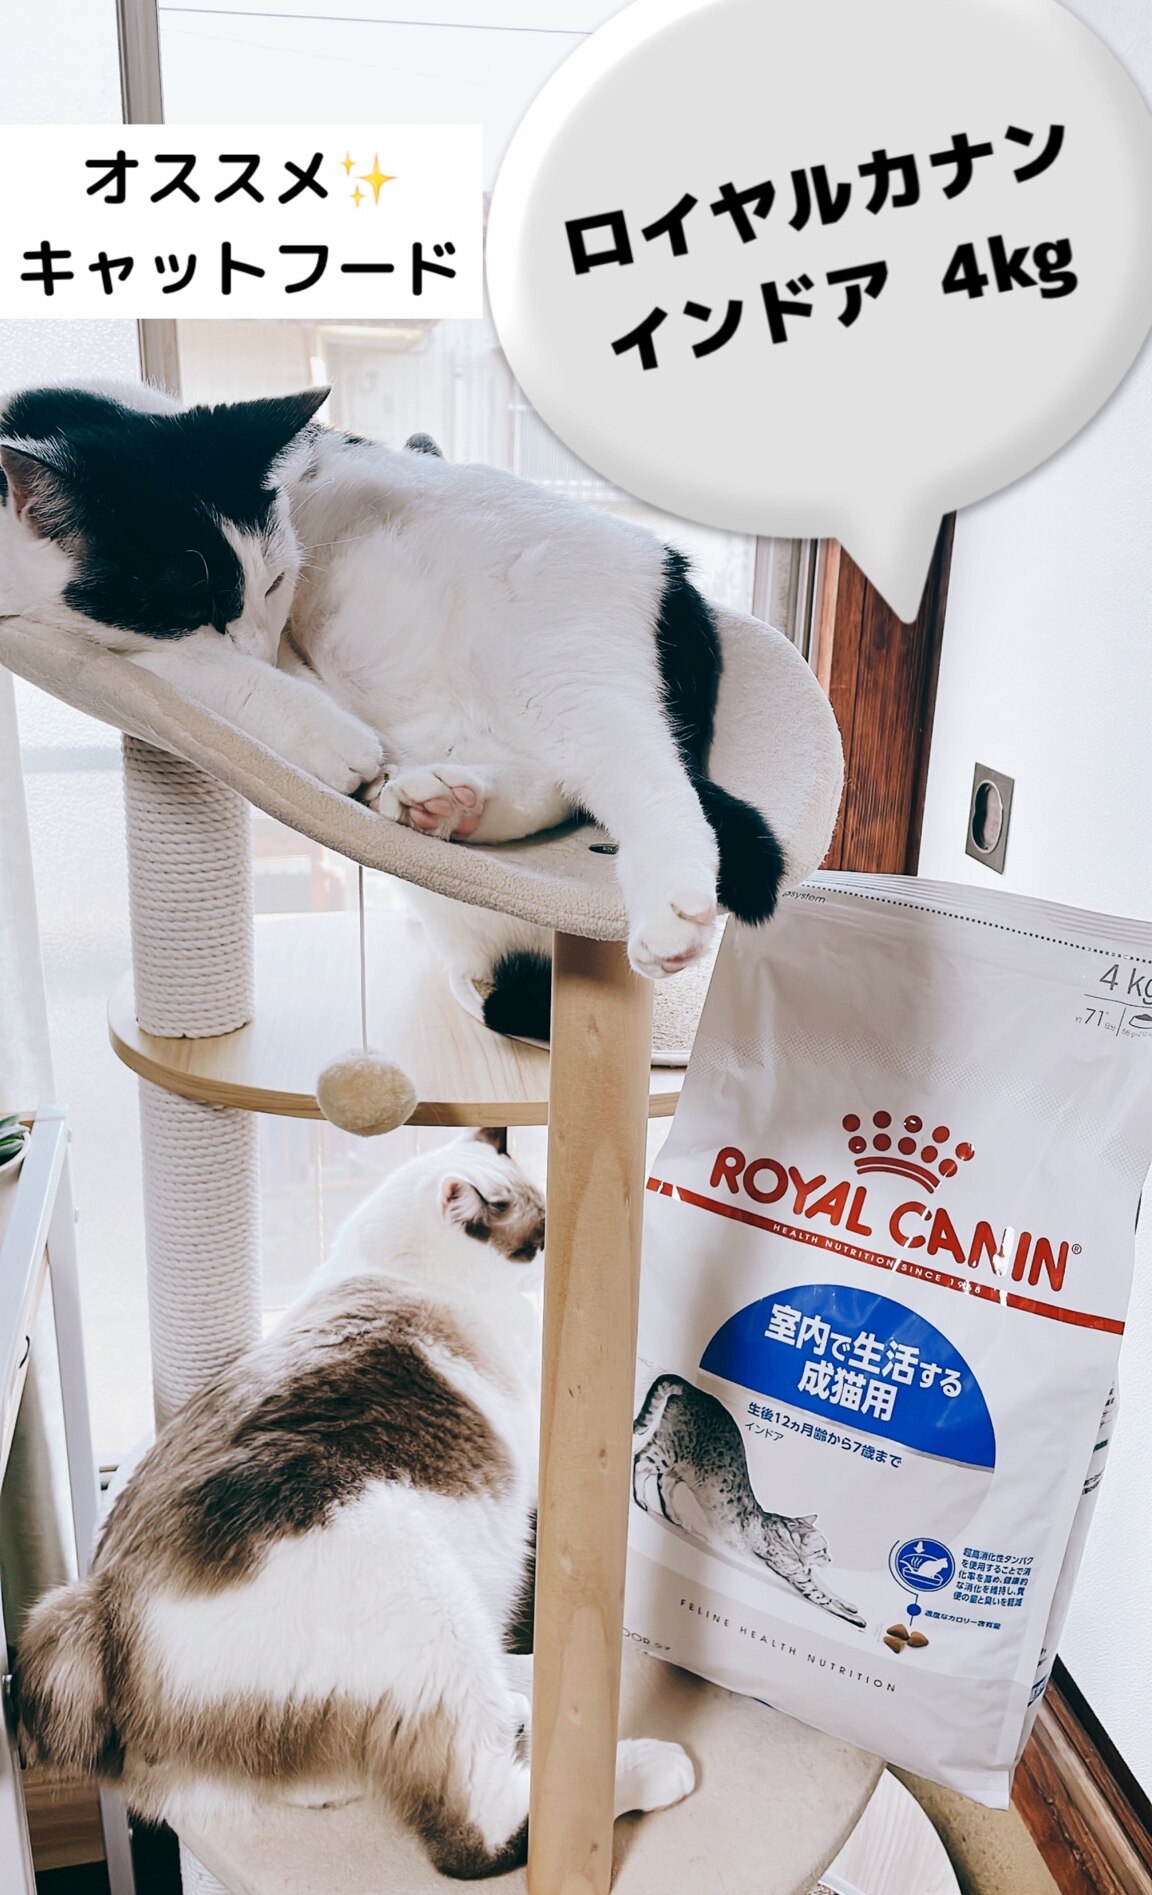 ロイヤルカナン インドア 7＋ 猫用 3.5kg (猫・キャット) [正規品] キャットフード ドライ